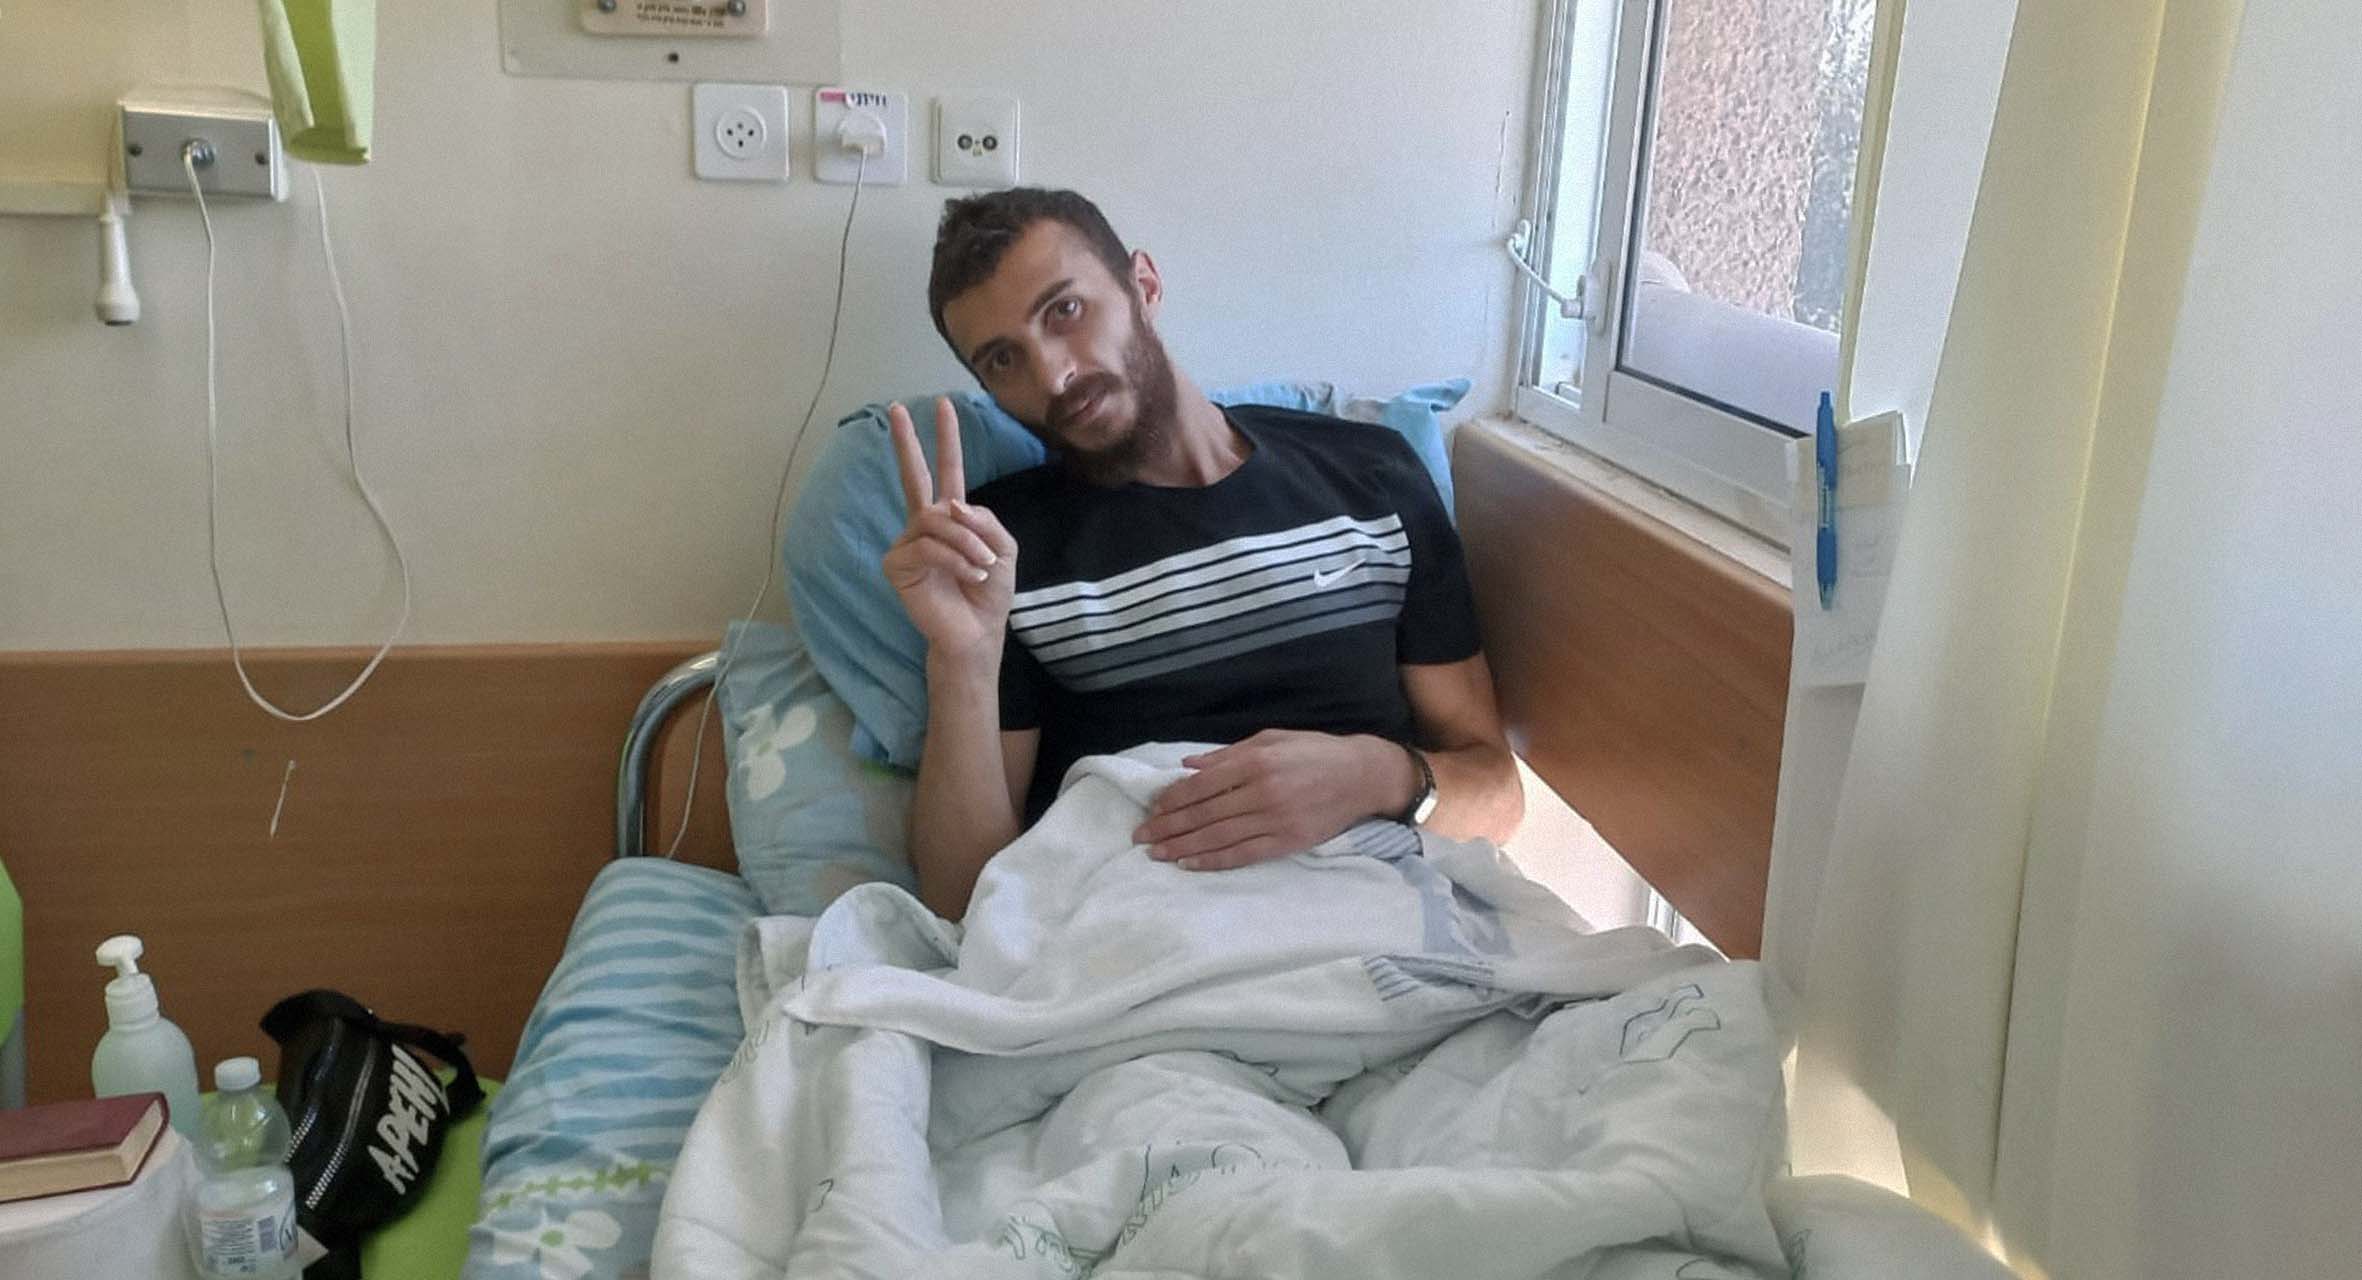 صورة إسرائيل تحدد ثلاث سنوات اعتقال إداري وشهرين من إضراب الأسير عن الطعام كموعد مناسب للنظر في سبب اعتقاله